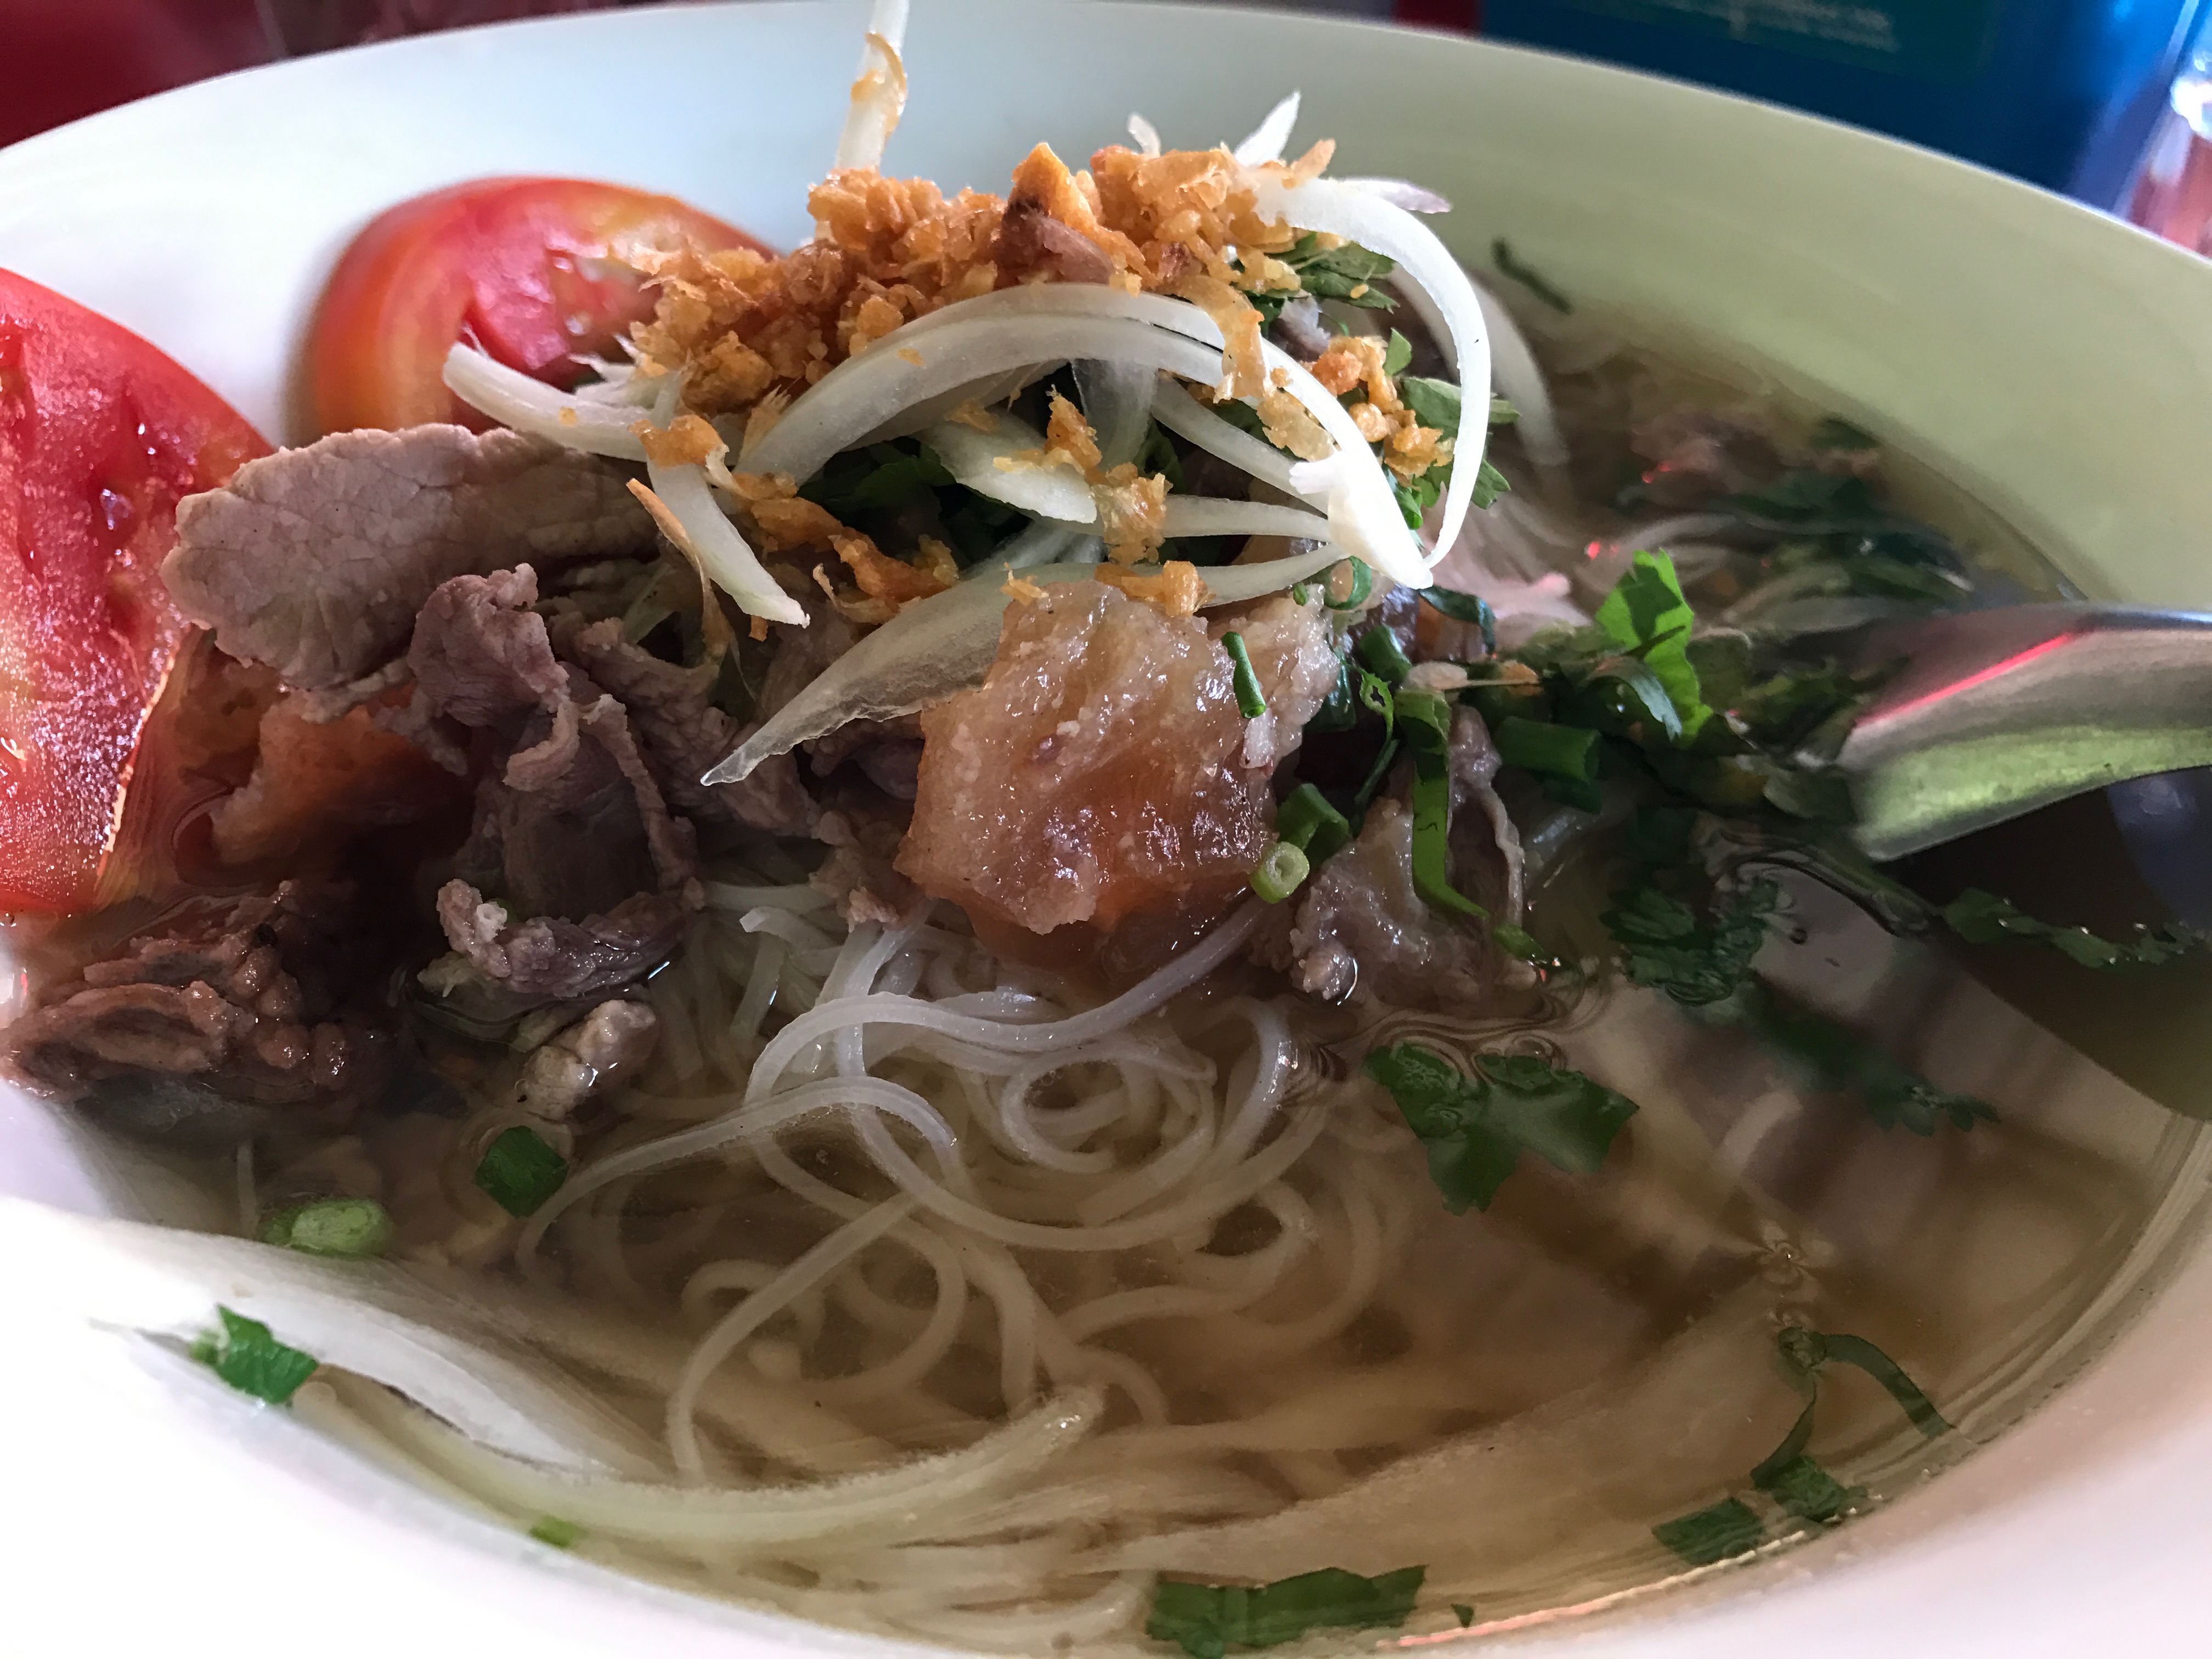 老撾食啲咩——街邊麵檔篇 Eat Well in Laos — Noodle Stalls